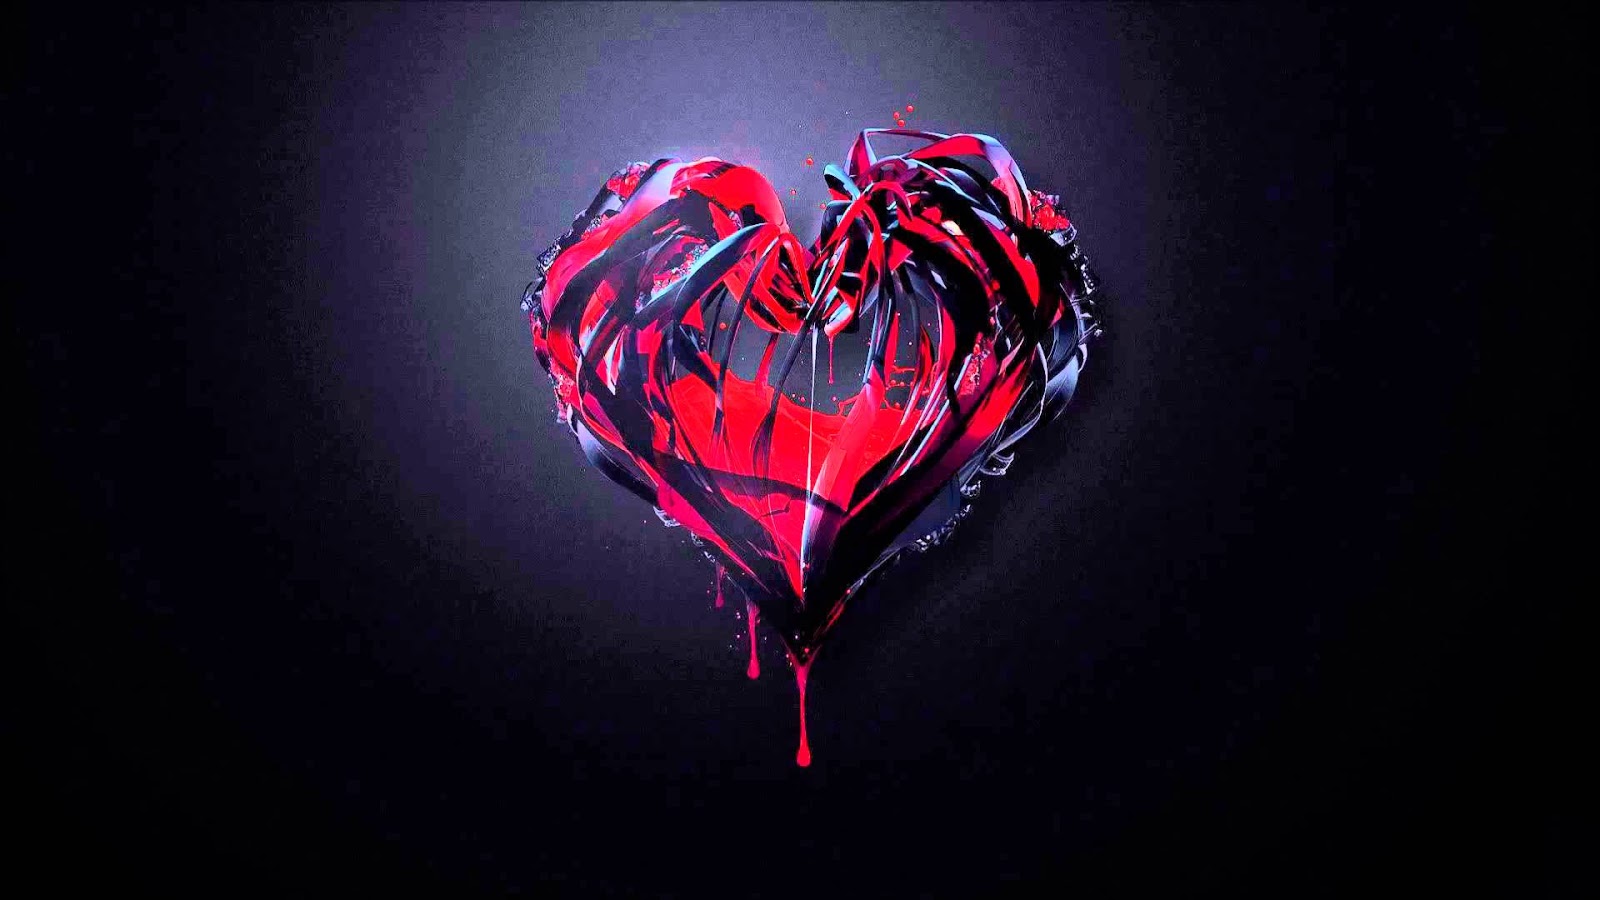 Tải hình nền trái tim tình yêu 3D đẹp nhất hiện nay